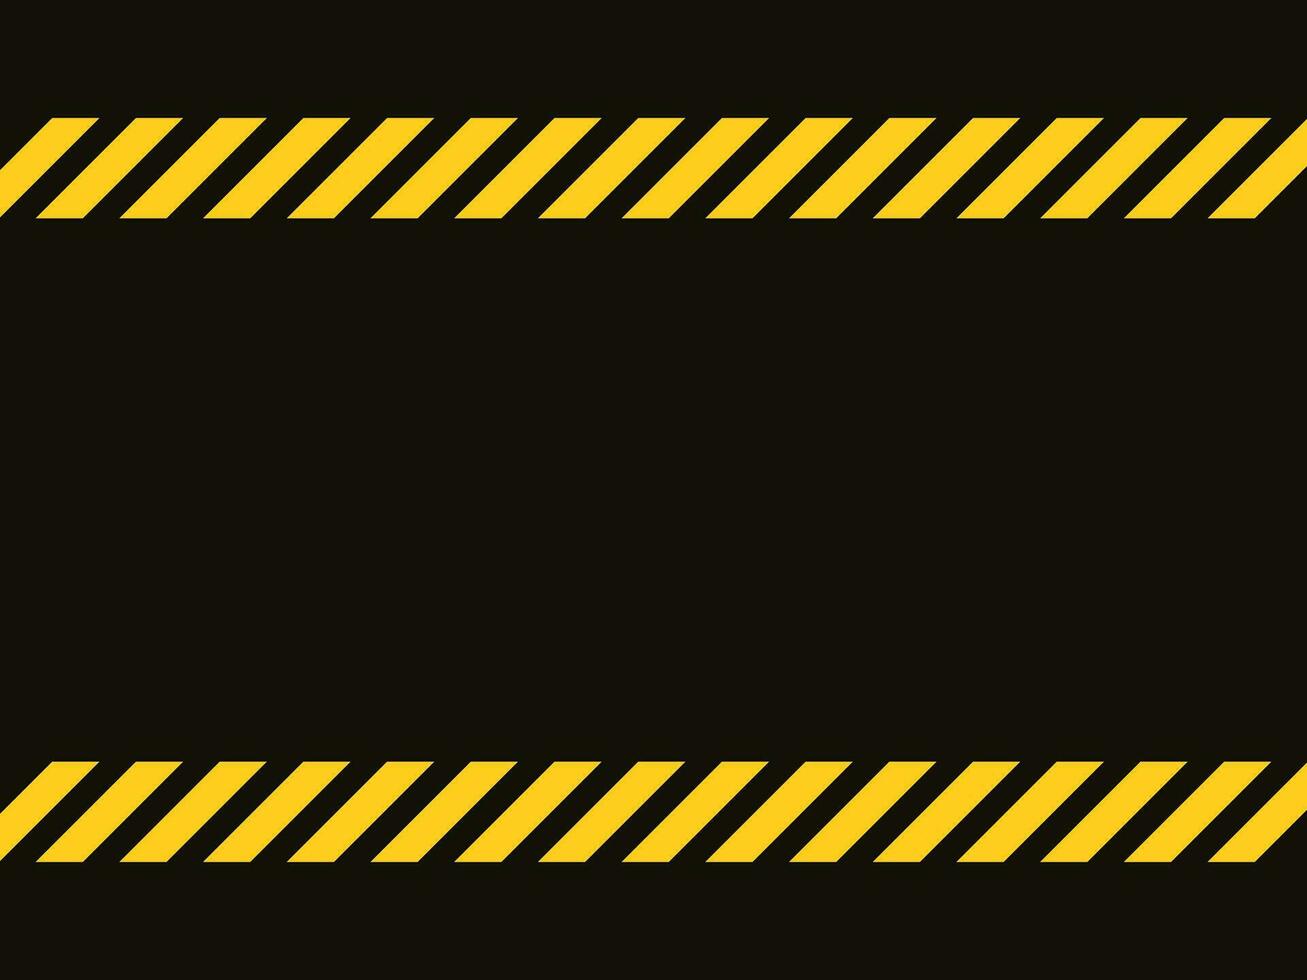 schwarz und Gelb Linie gestreift Hintergrund.Vorsicht Band.leer Warnung hintergrund.vektor Illustration vektor